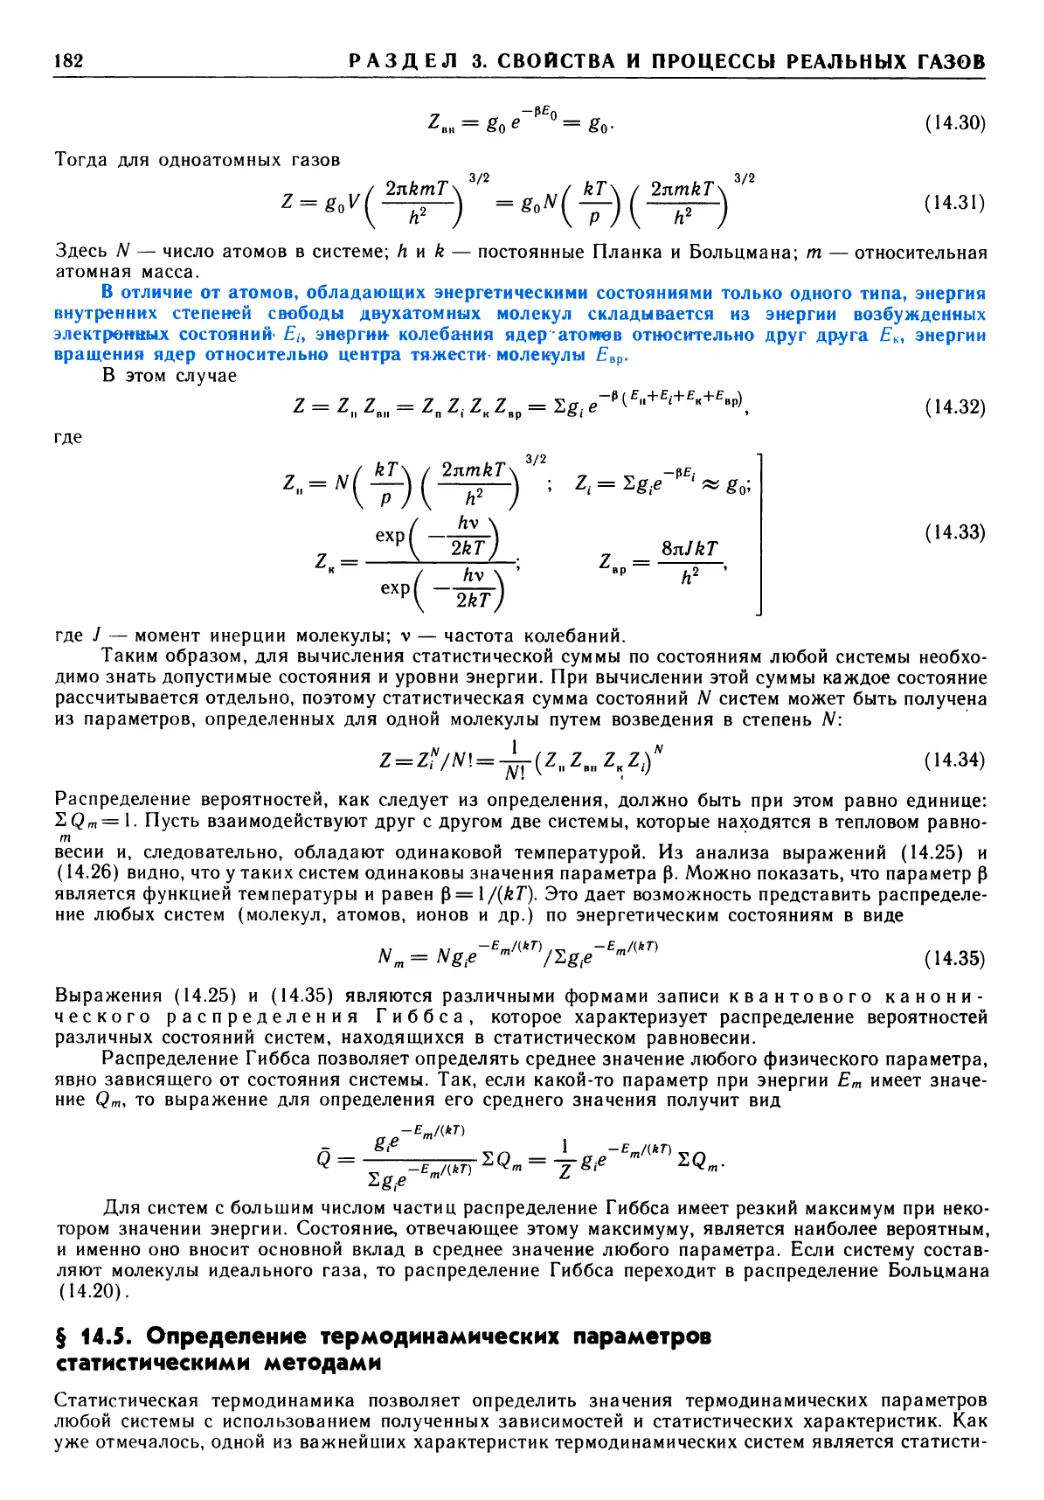 § 14.5. Определение термодинамических параметров статистическими методами